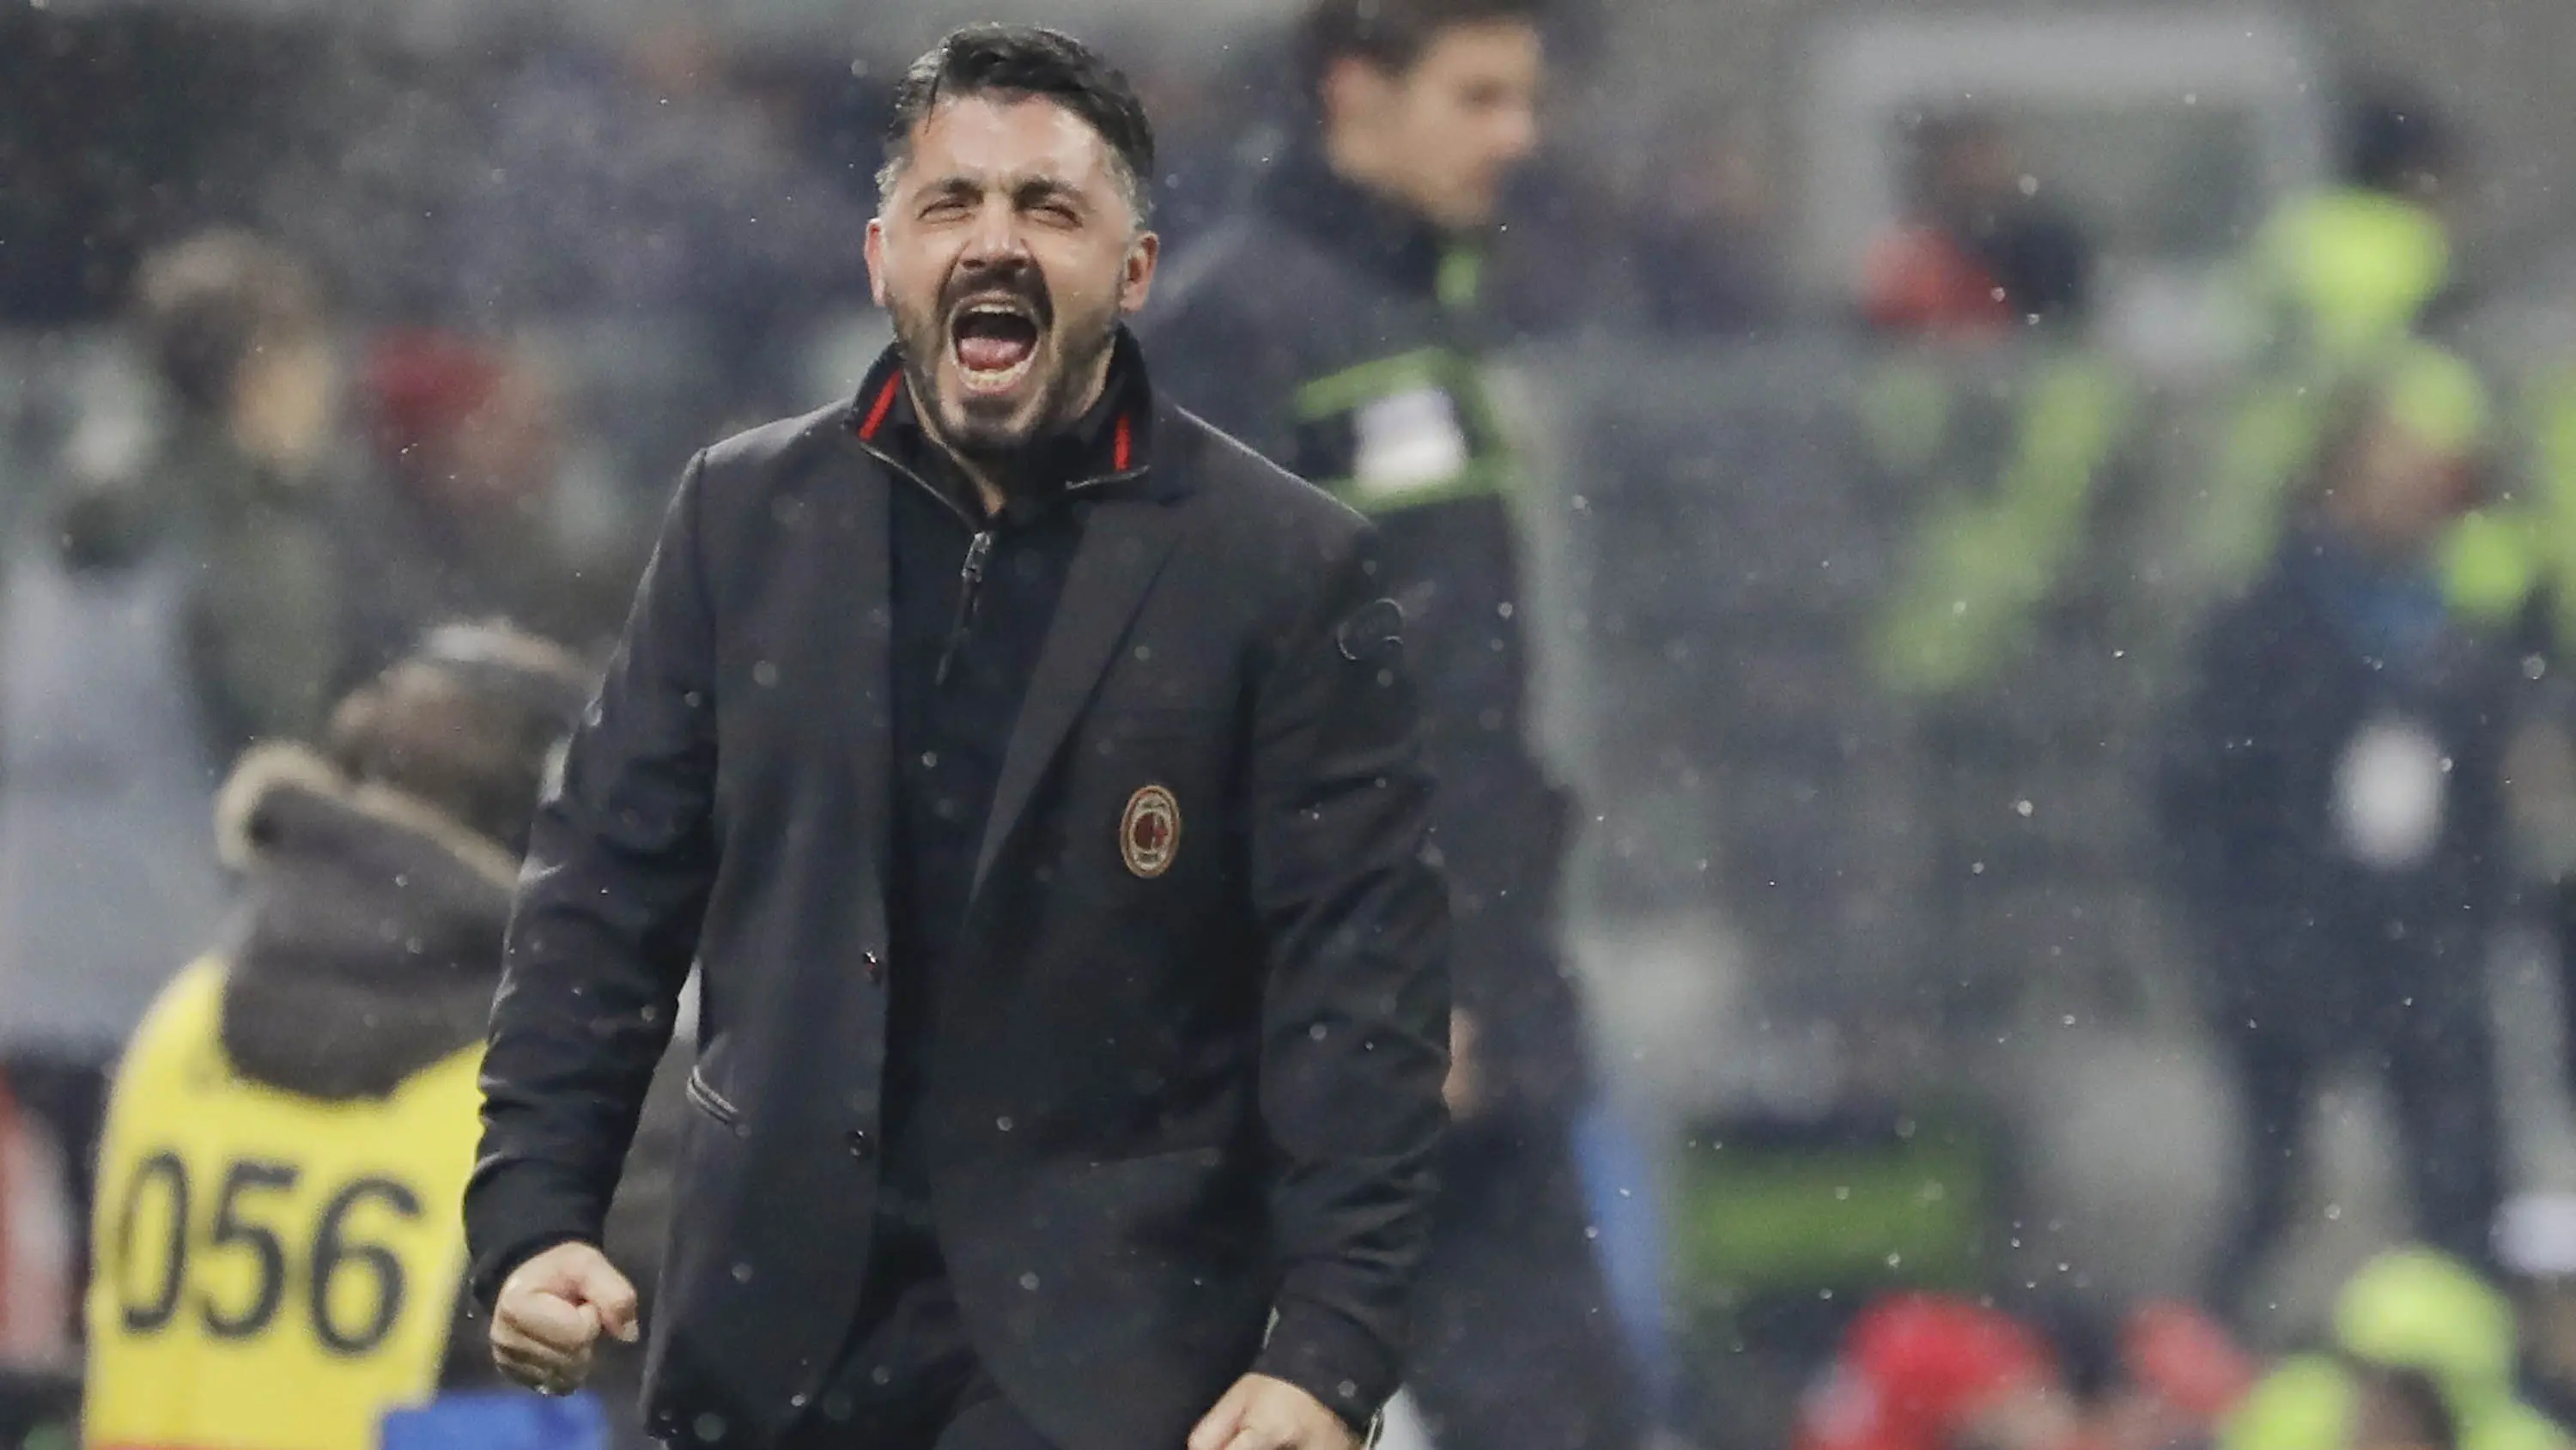 Pelatih AC Milan, Gennaro Gattuso, melakukan selebrasi usai AC Milan mengalahkan Bologna 2-1 pada laga Serie A di San Siro. (AP/Luca Bruno)